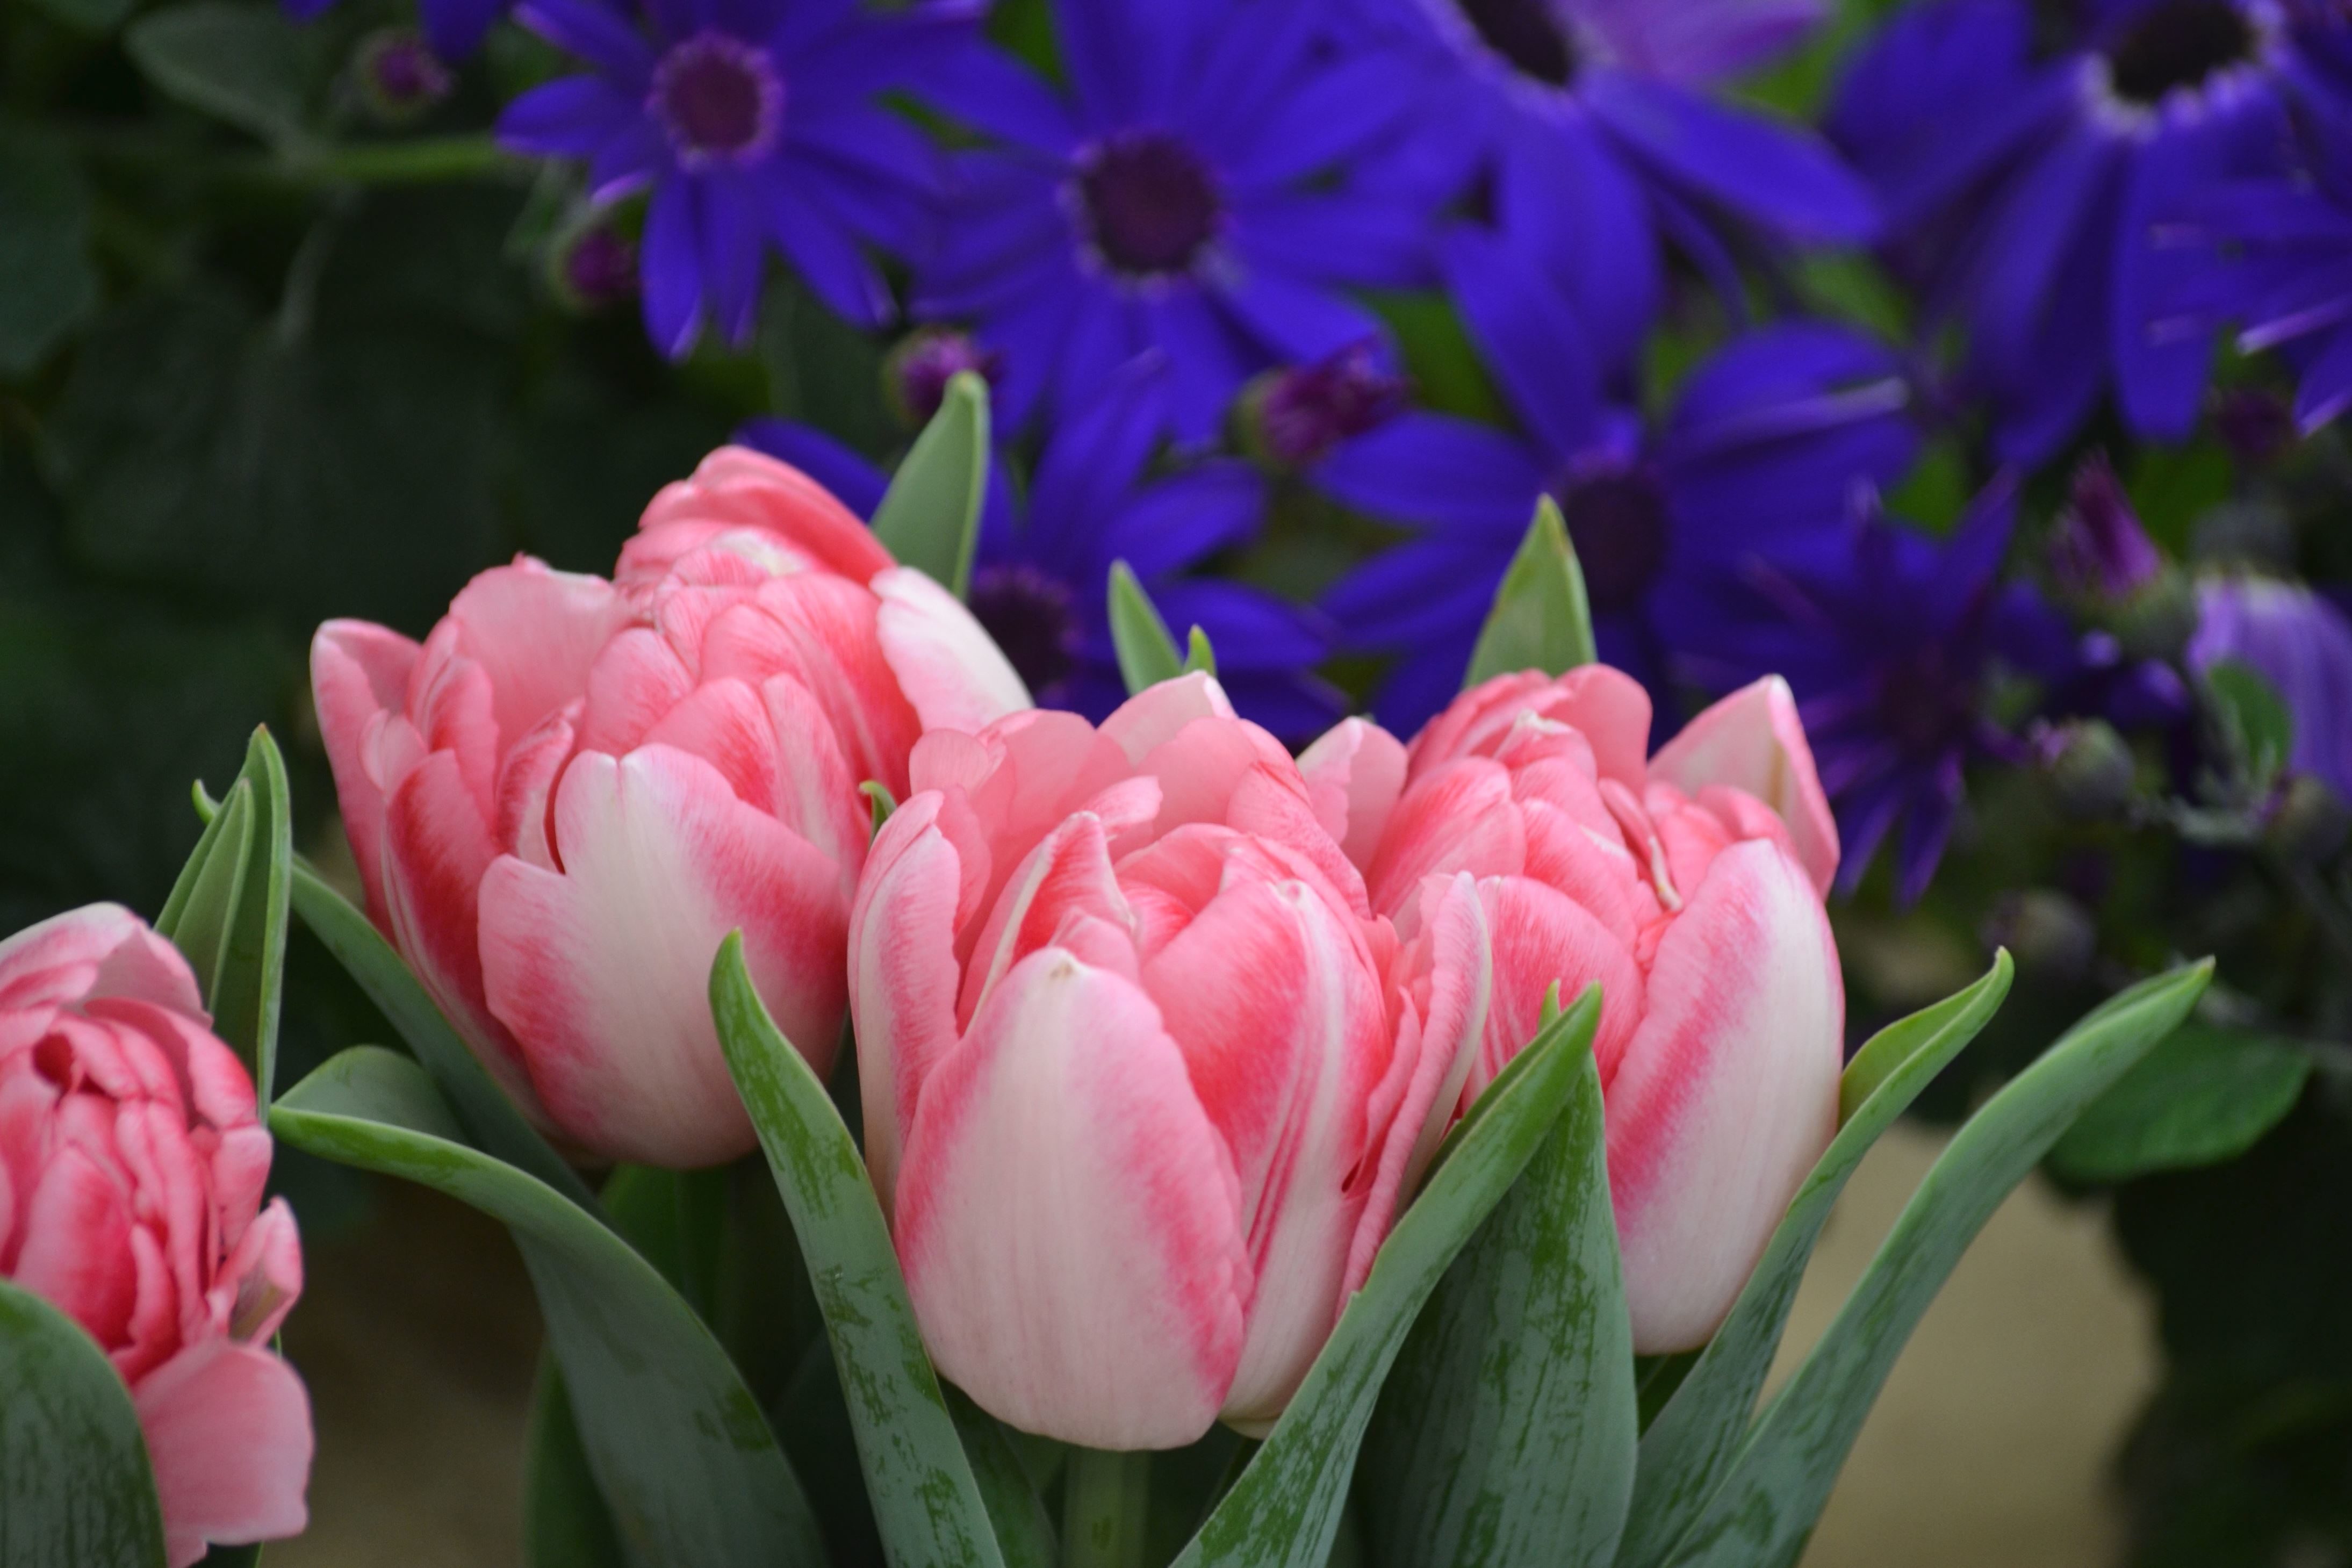 Free picture: tulips, vegetation, petals, pistil, spring, pink ...